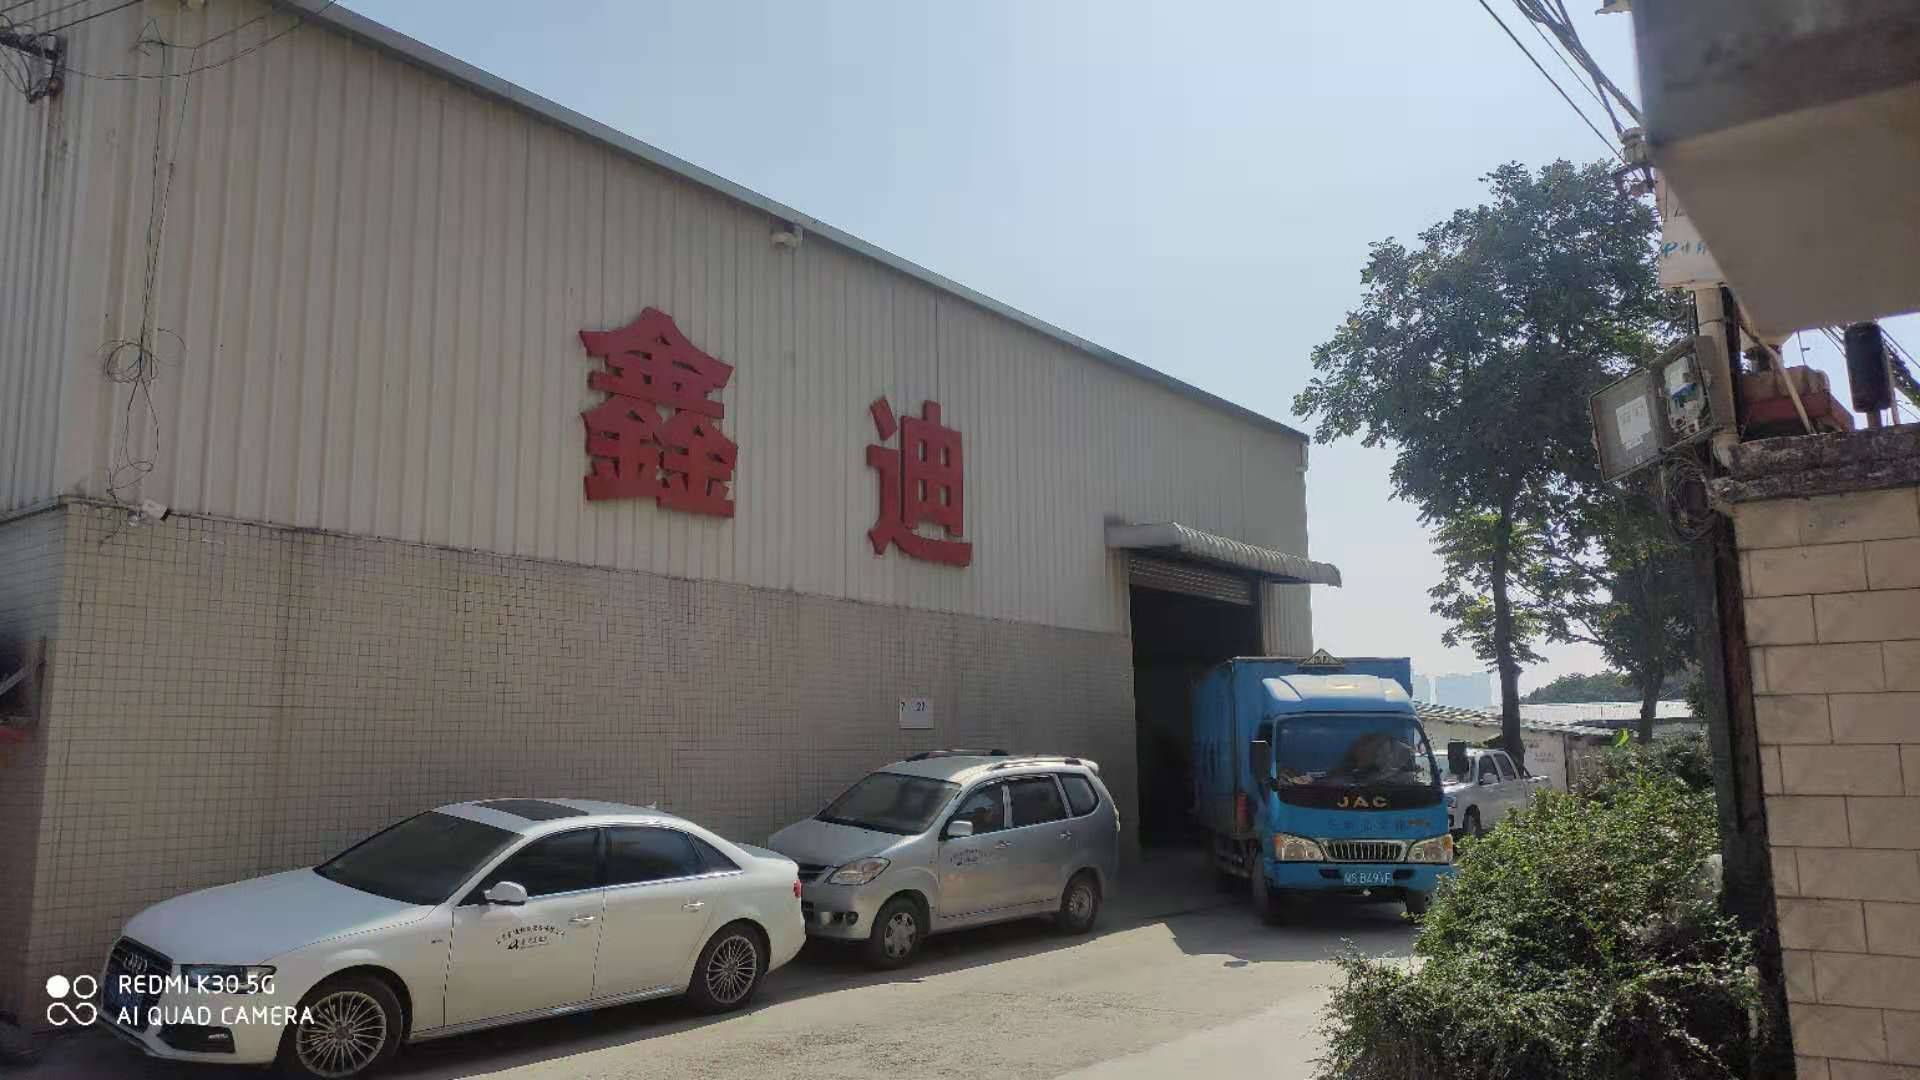   Dongguan Xindi Machinery Equipment Co., Ltd